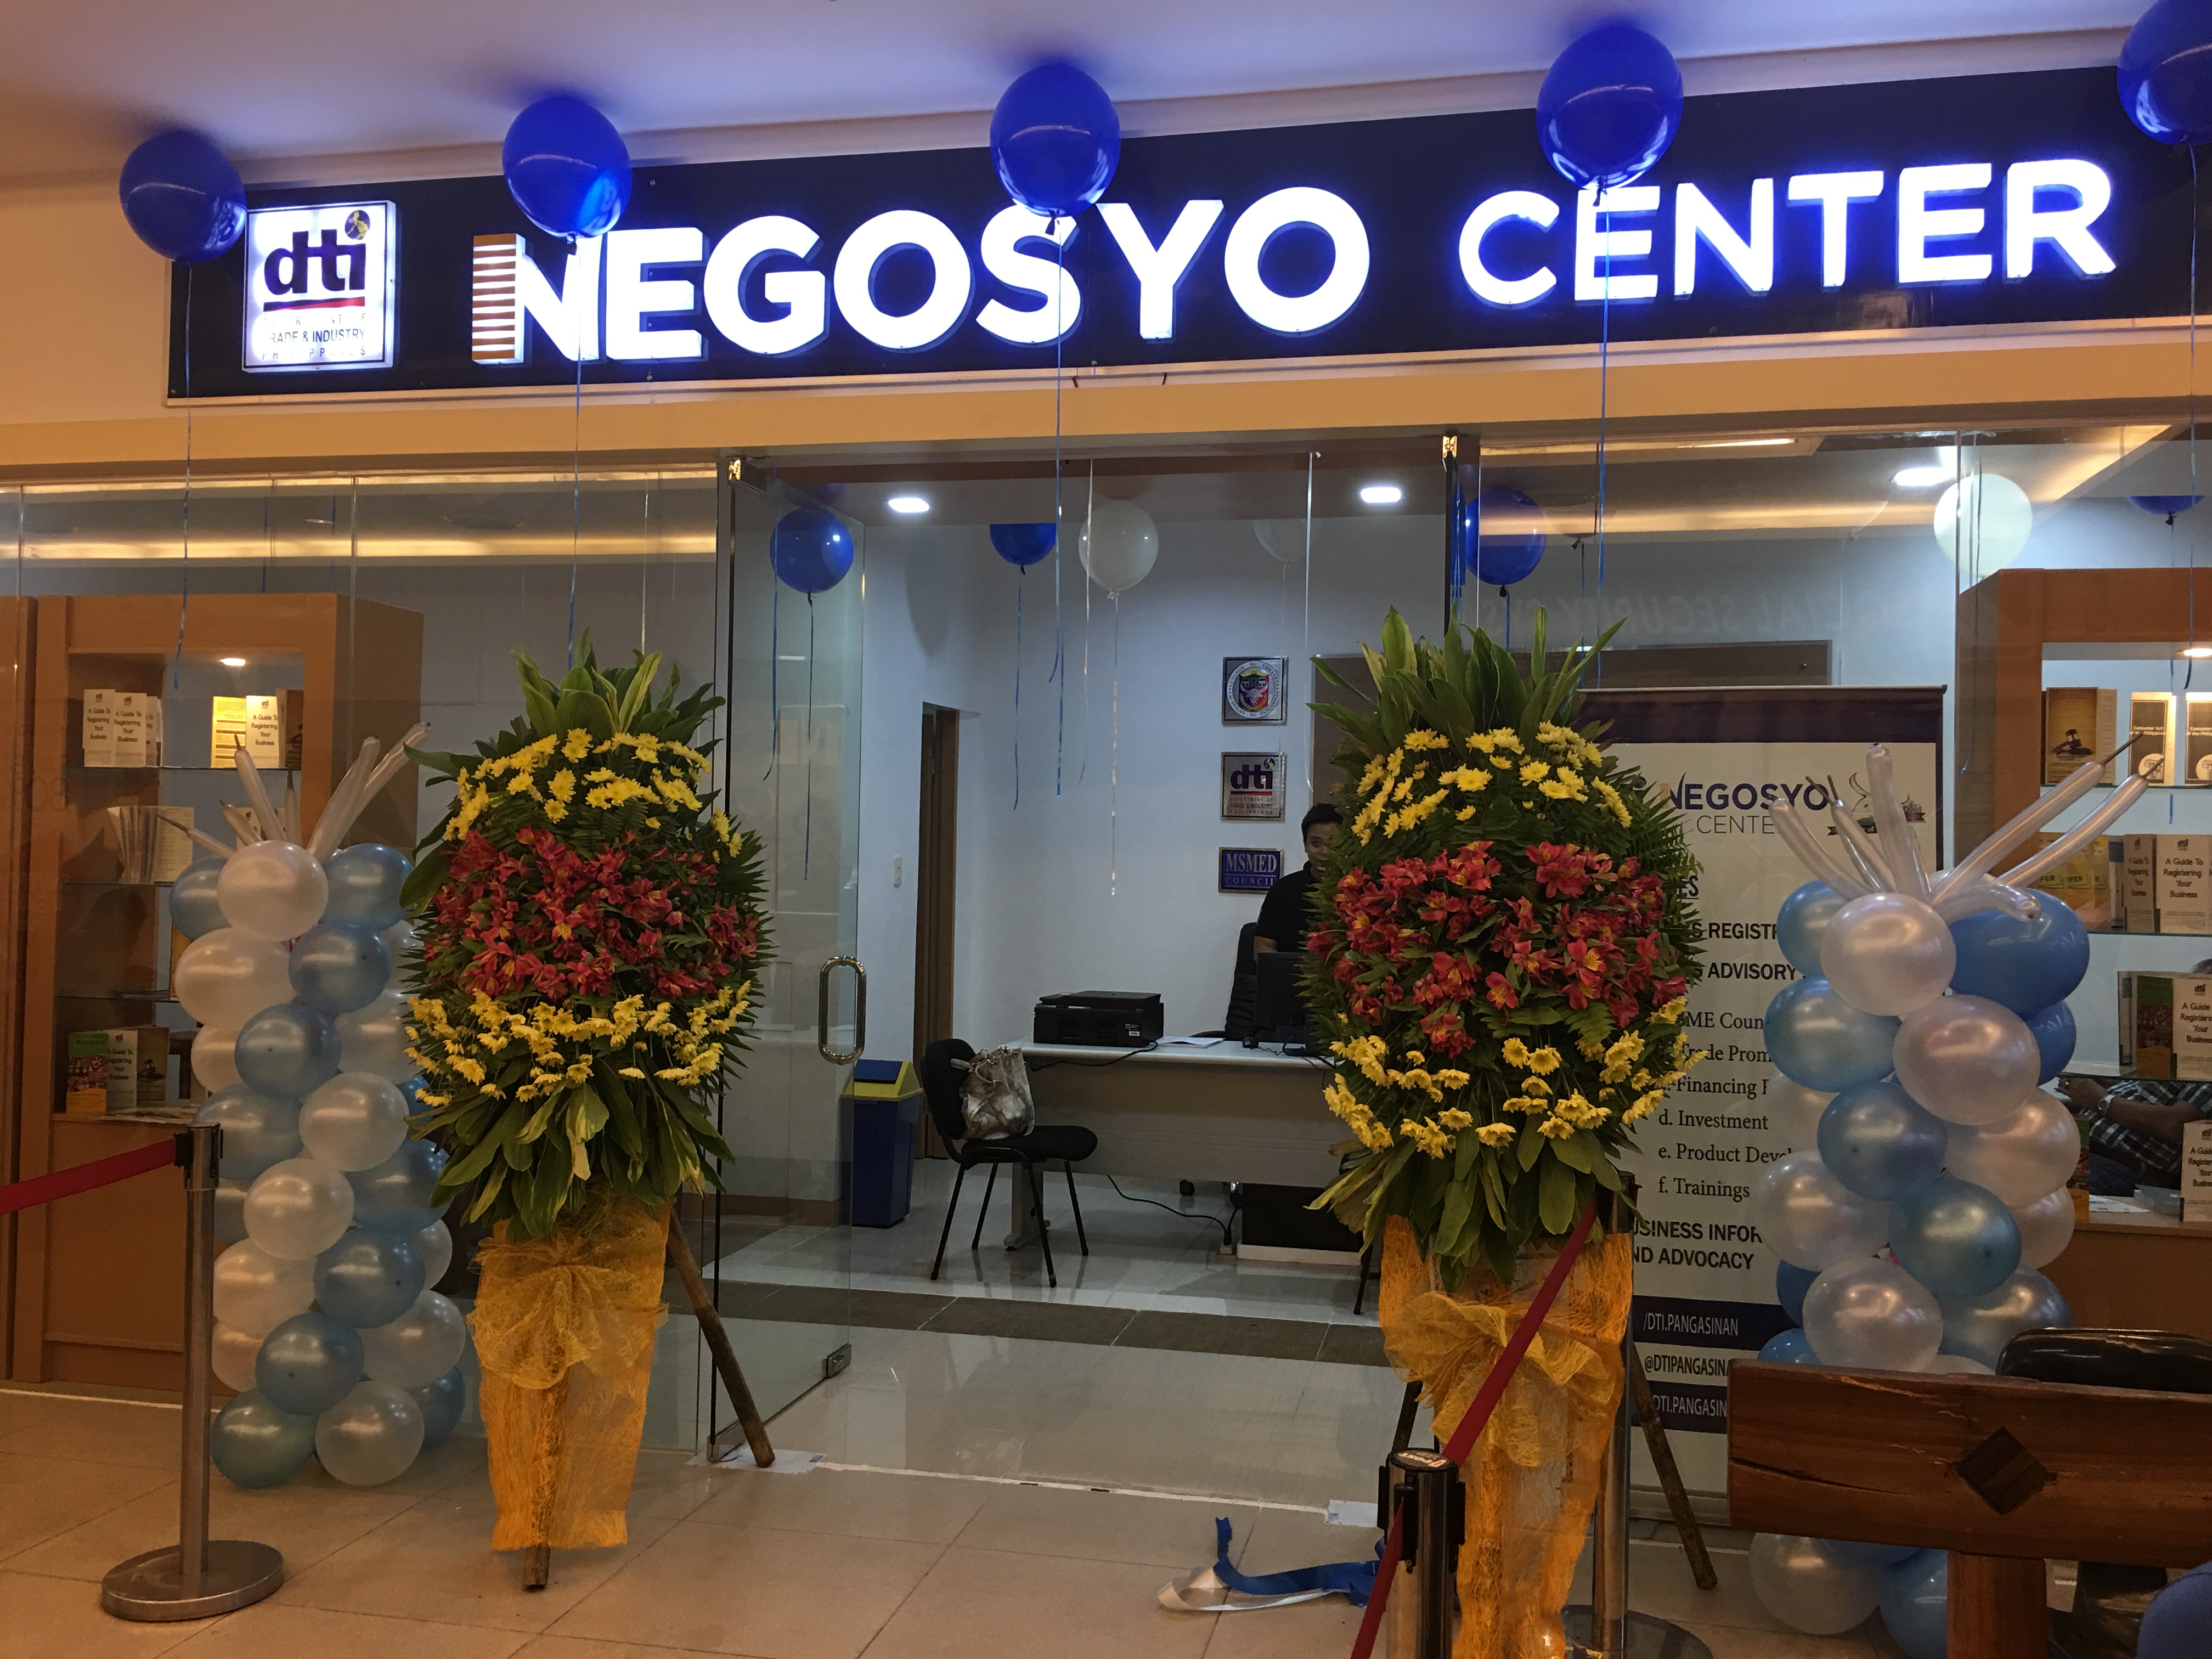 DTI Negosyo Center